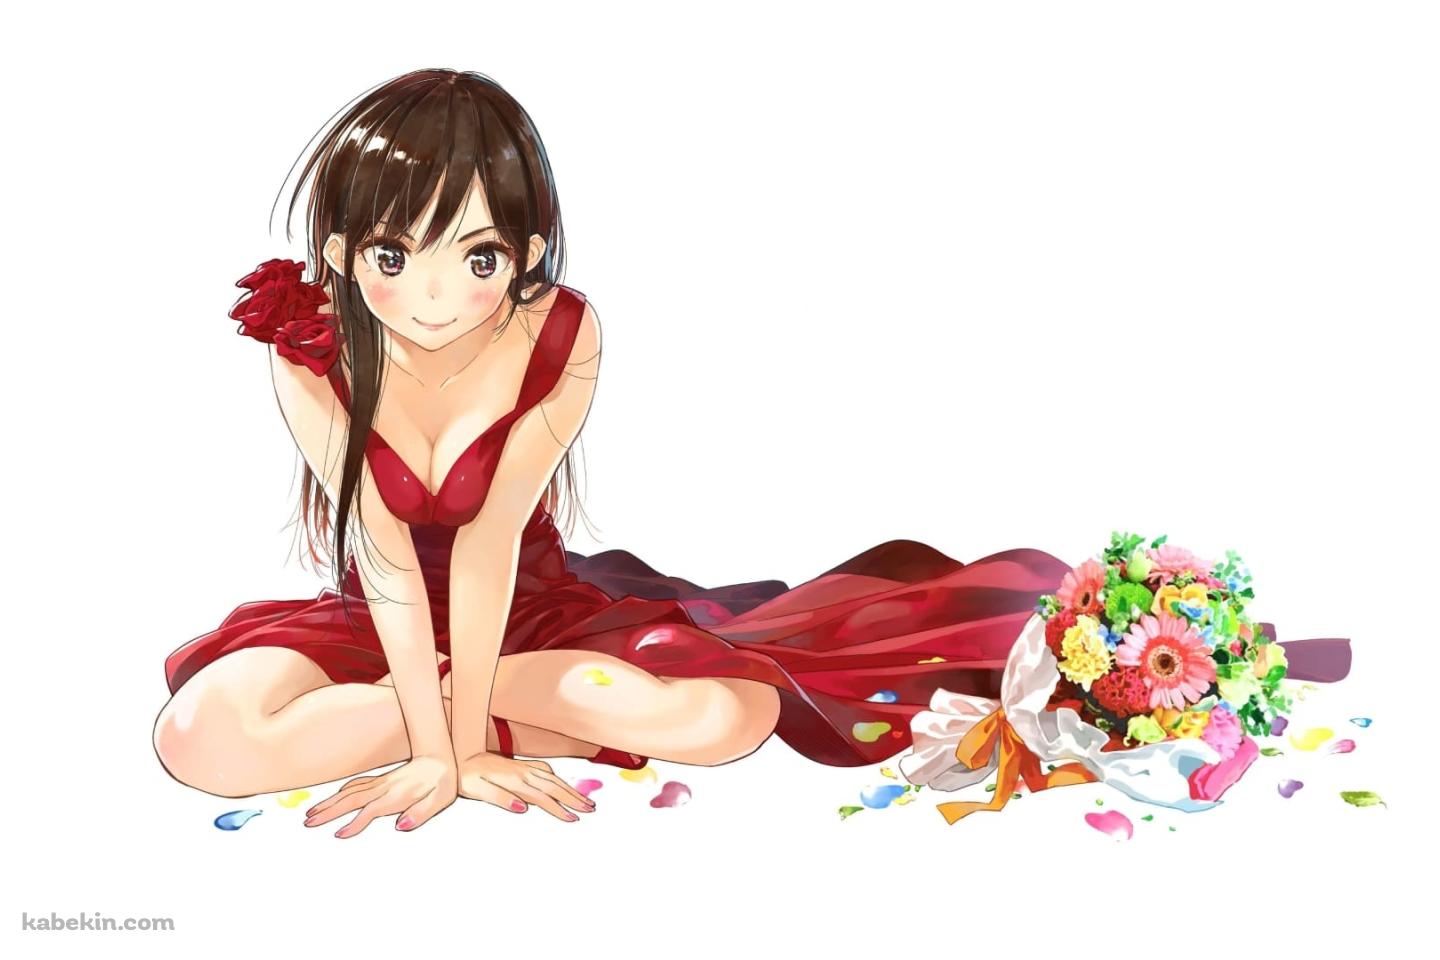 赤いドレスを着たかわいい水原千鶴 / 彼女、お借りします / ファンアート / かわいいの壁紙(1440px x 960px) 高画質 PC・デスクトップ用